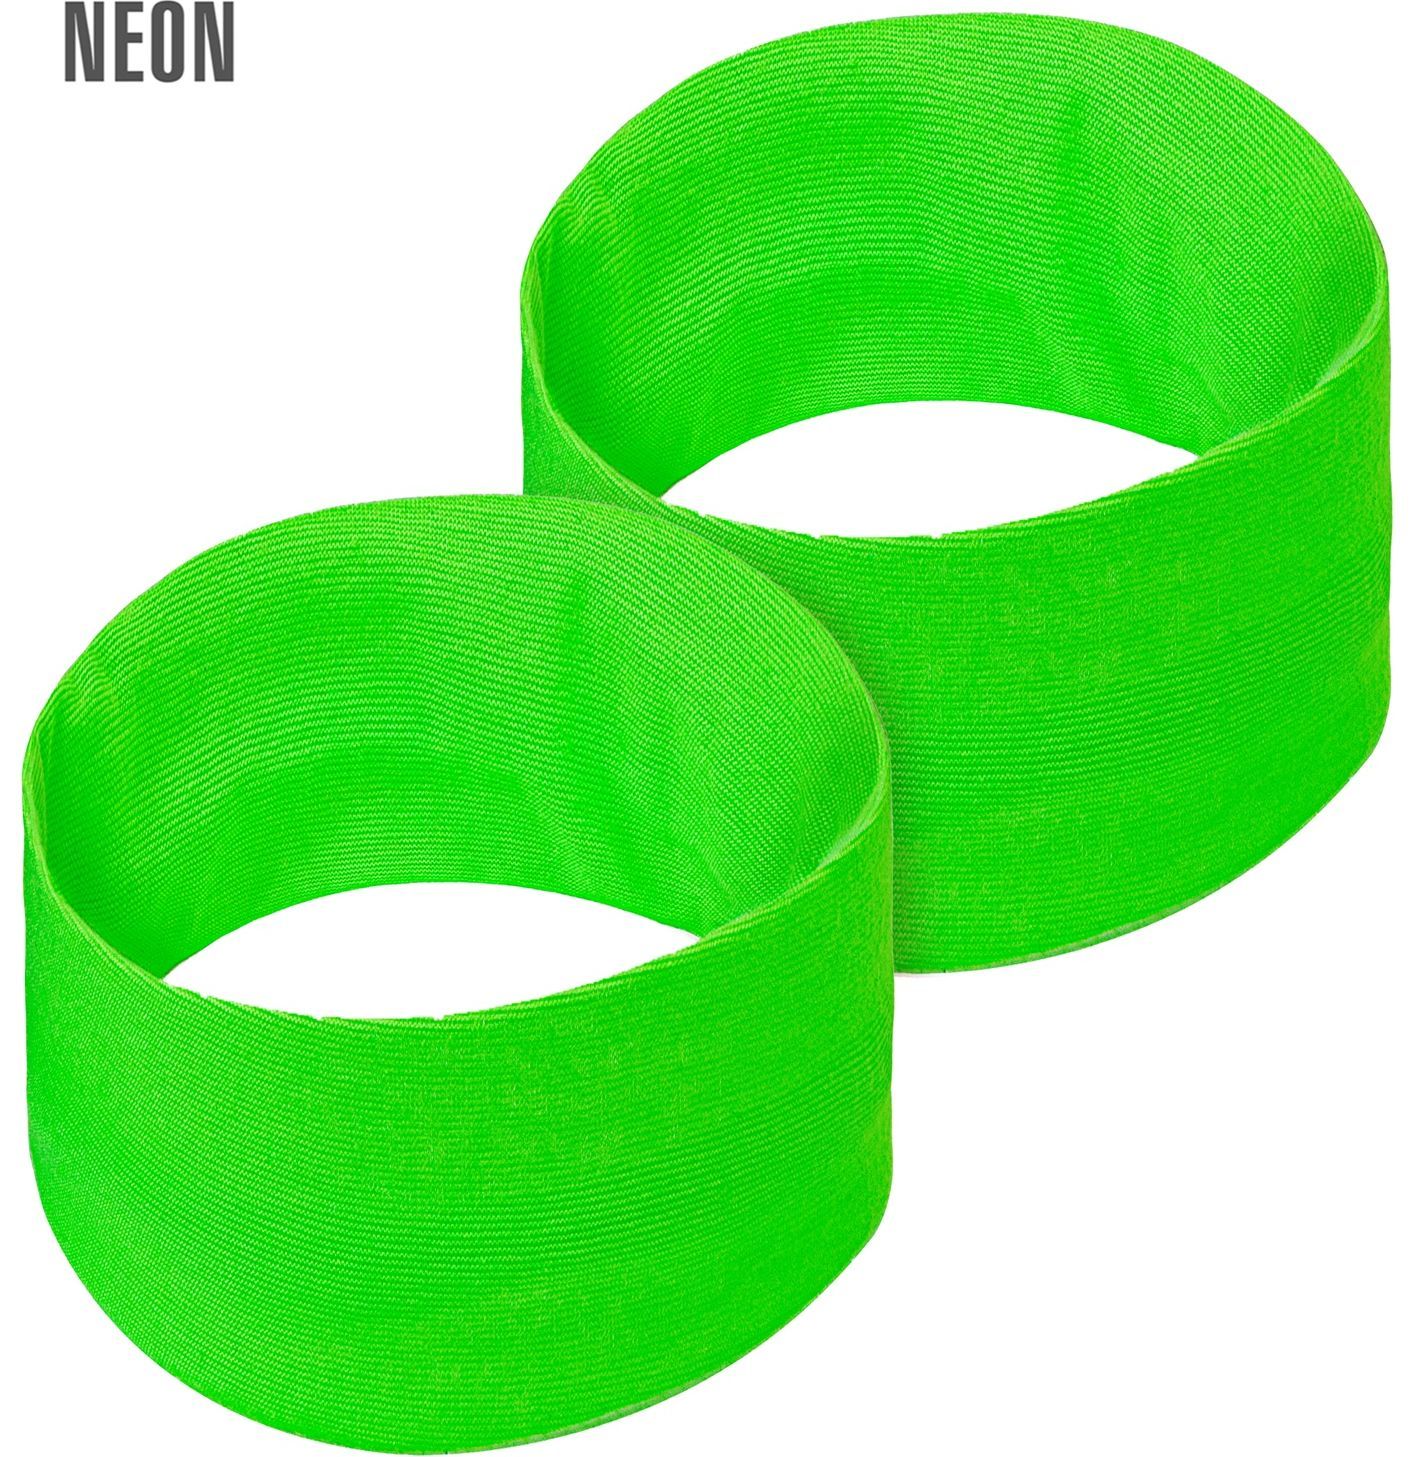 Nineties neon groene polsbandjes